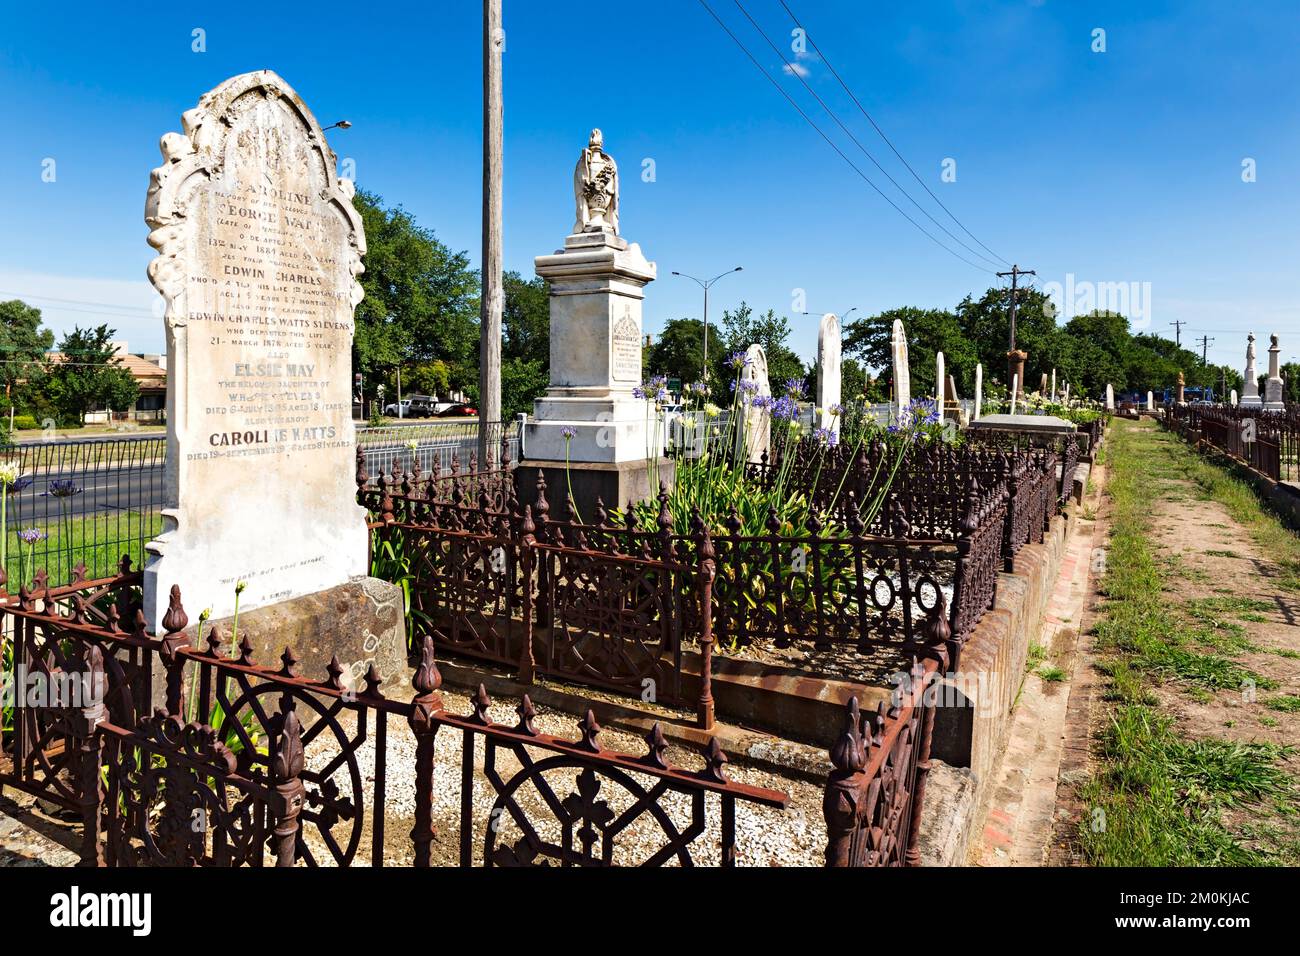 Ballarat Australia / Tombstones and graves at The Ballarat Old Cemetery. Stock Photo